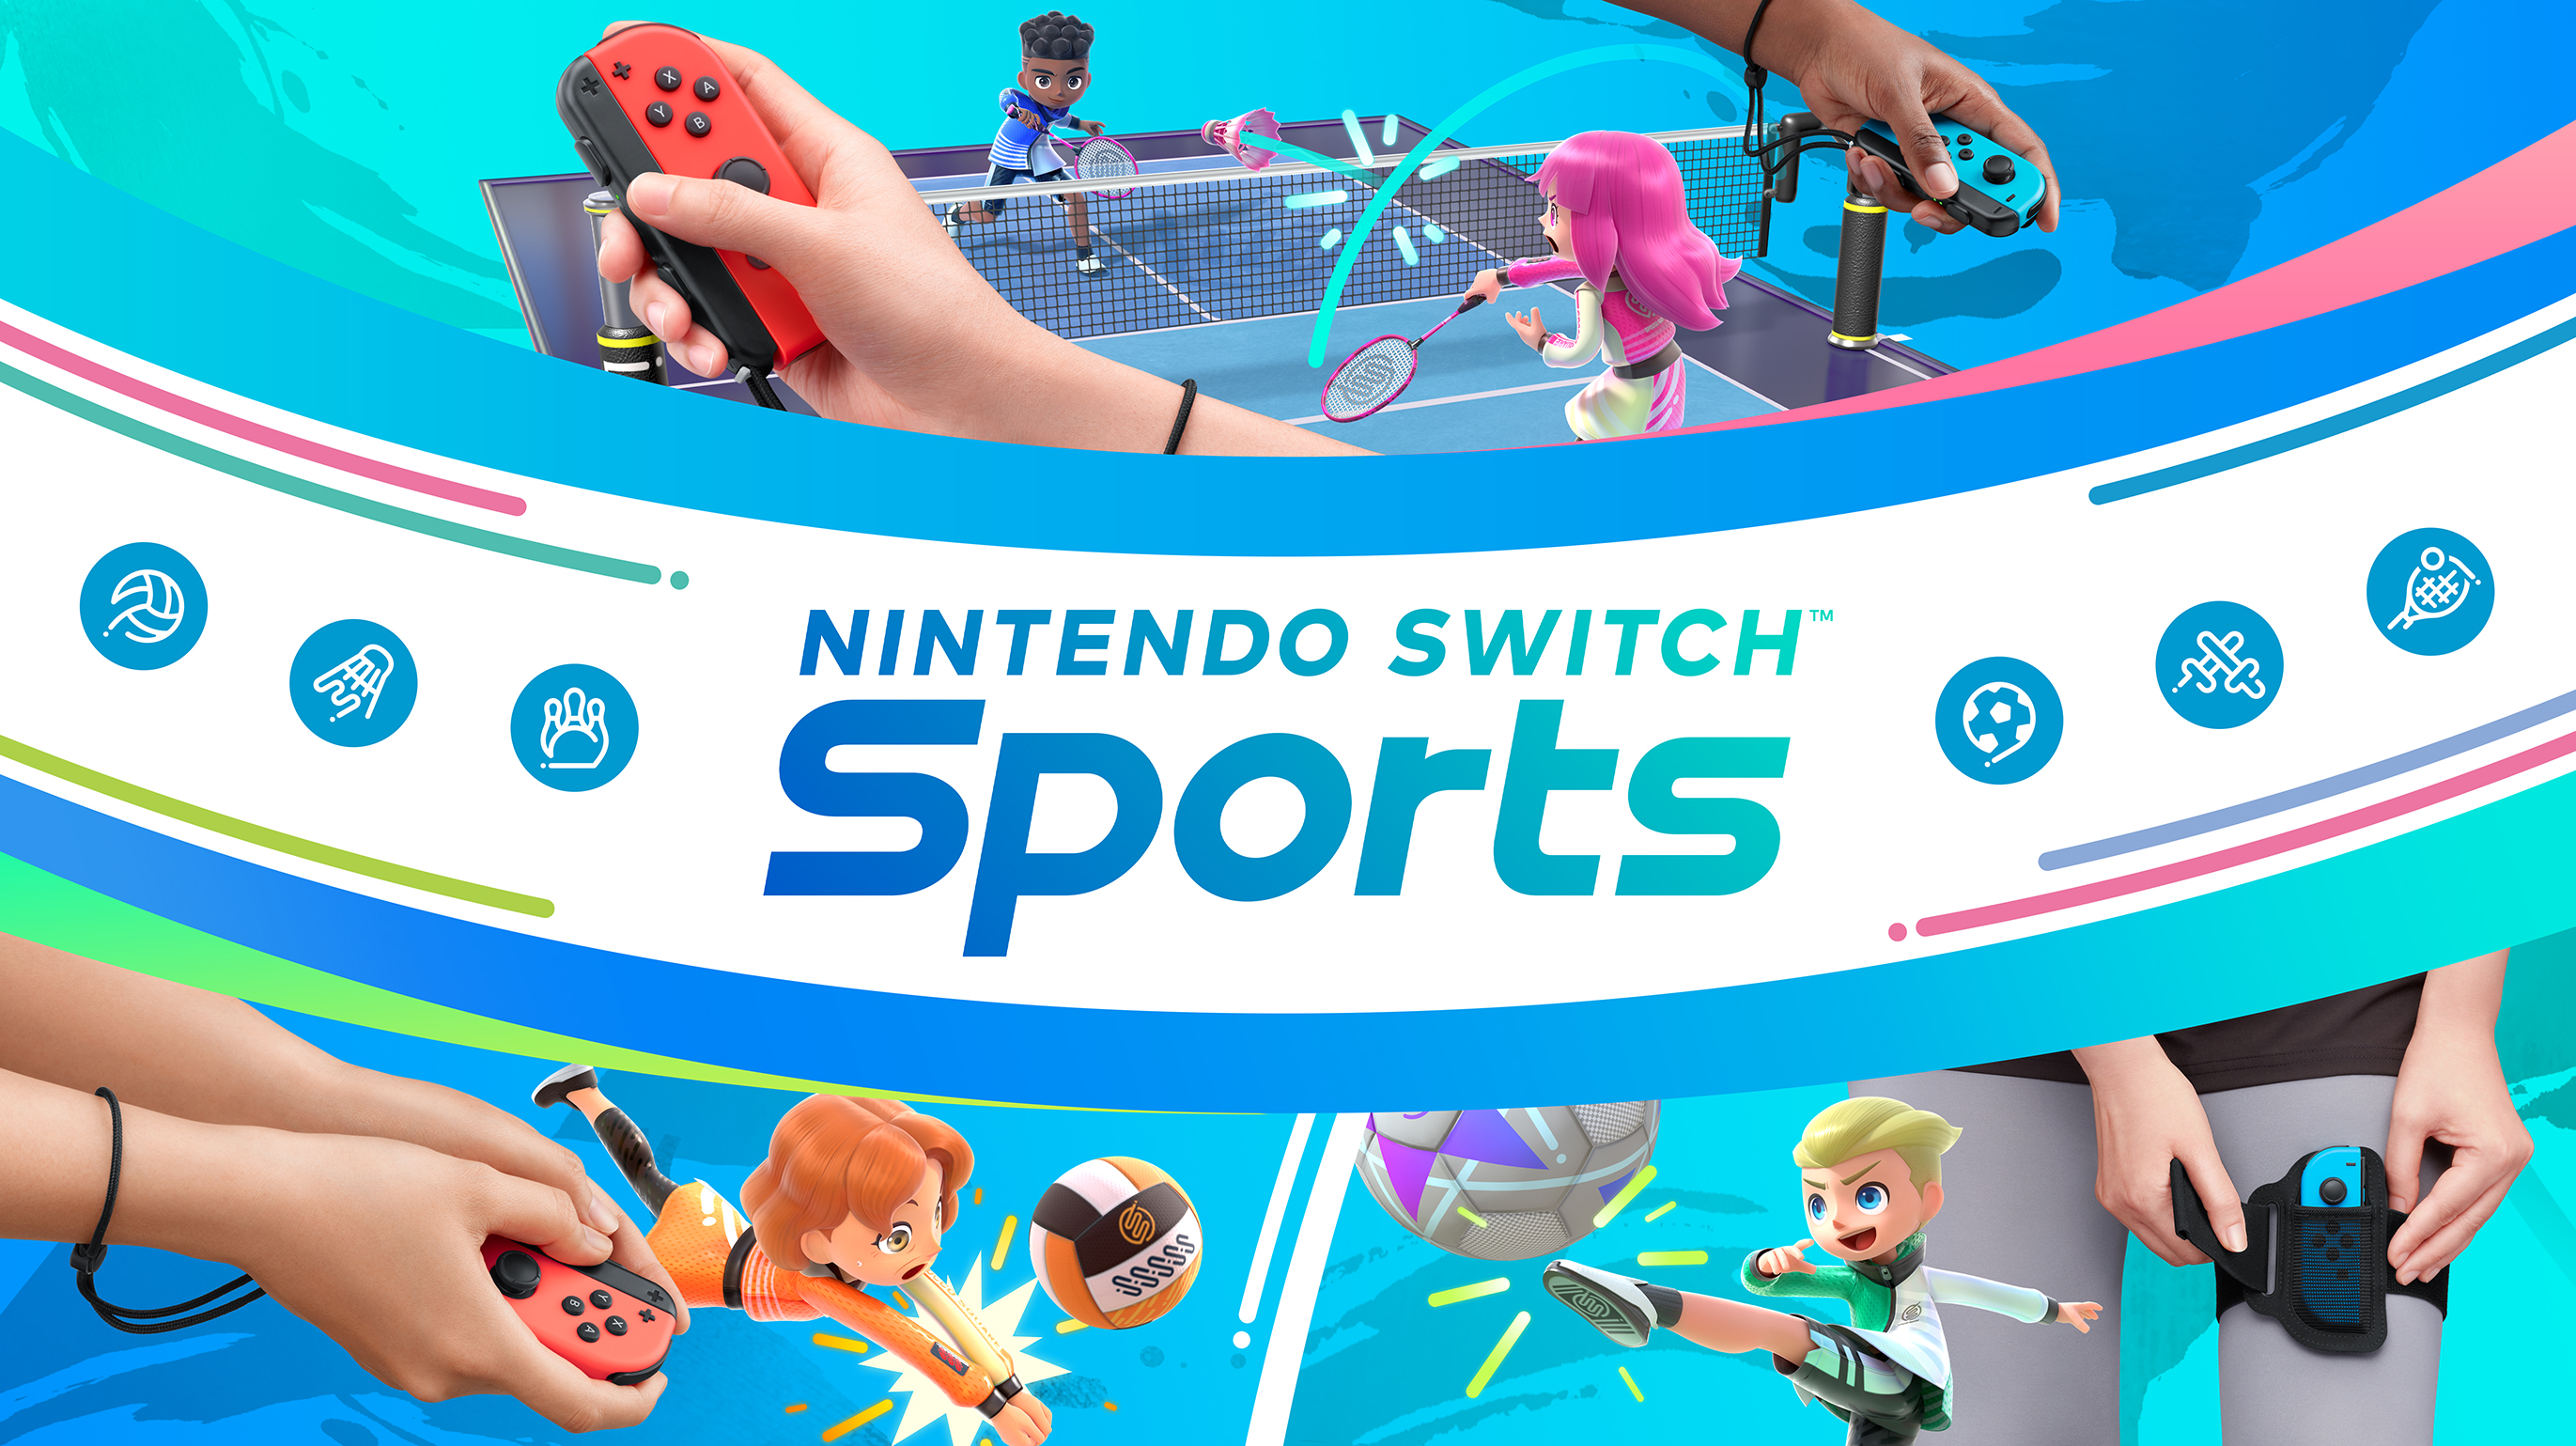 Nintendo Switch Sports Key Art zeigt die Joy-Cons, die für verschiedene Sportarten verwendet werden.